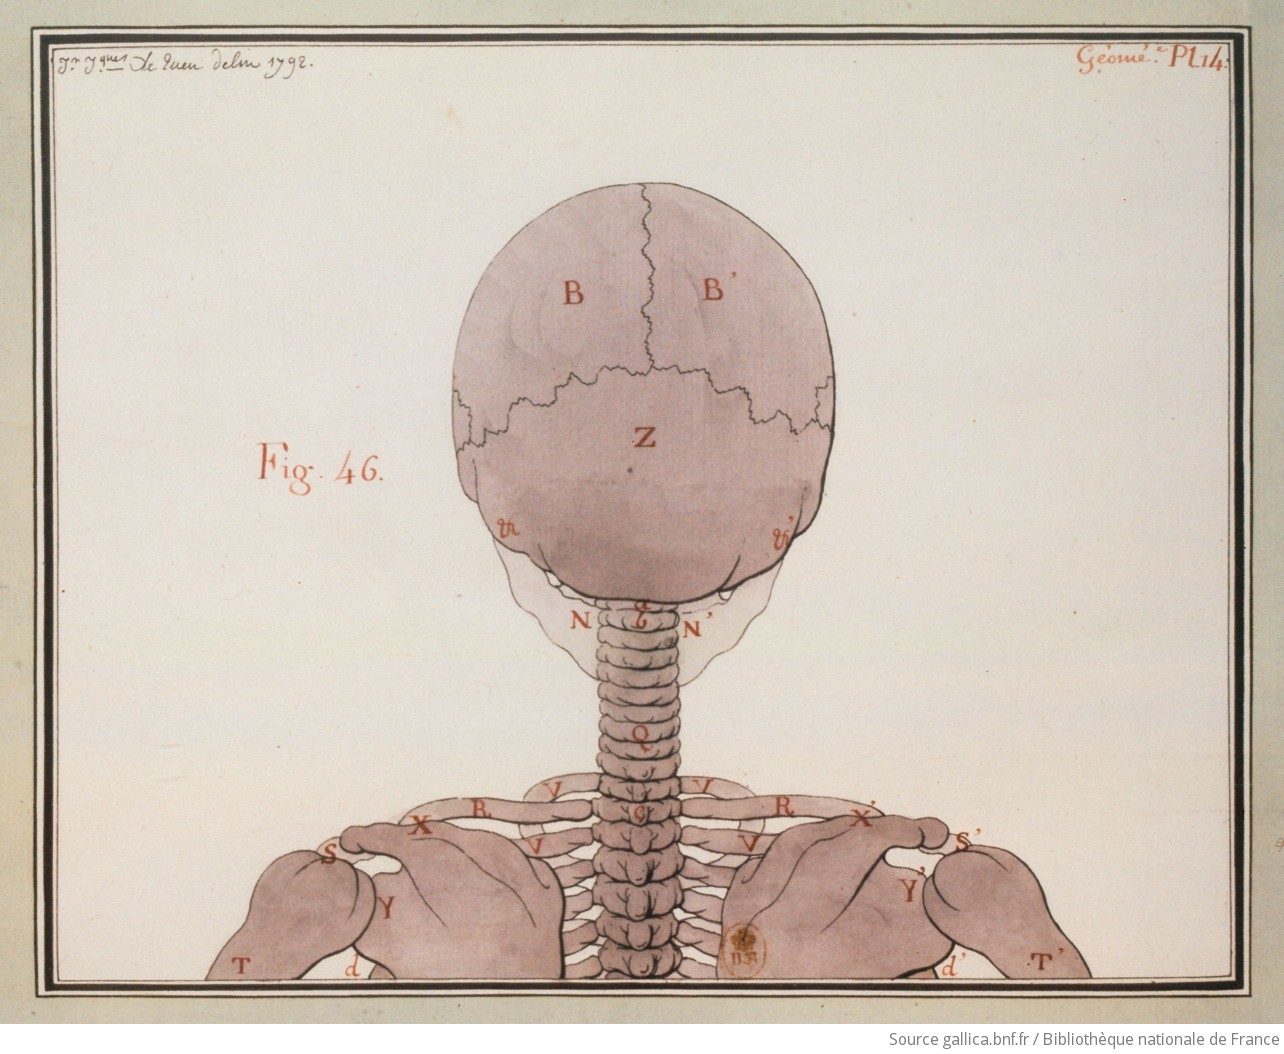 [Etude d'un squelette vue de dos] : [dessin] / Jn Jques Le Queu delin. 1792 - 1